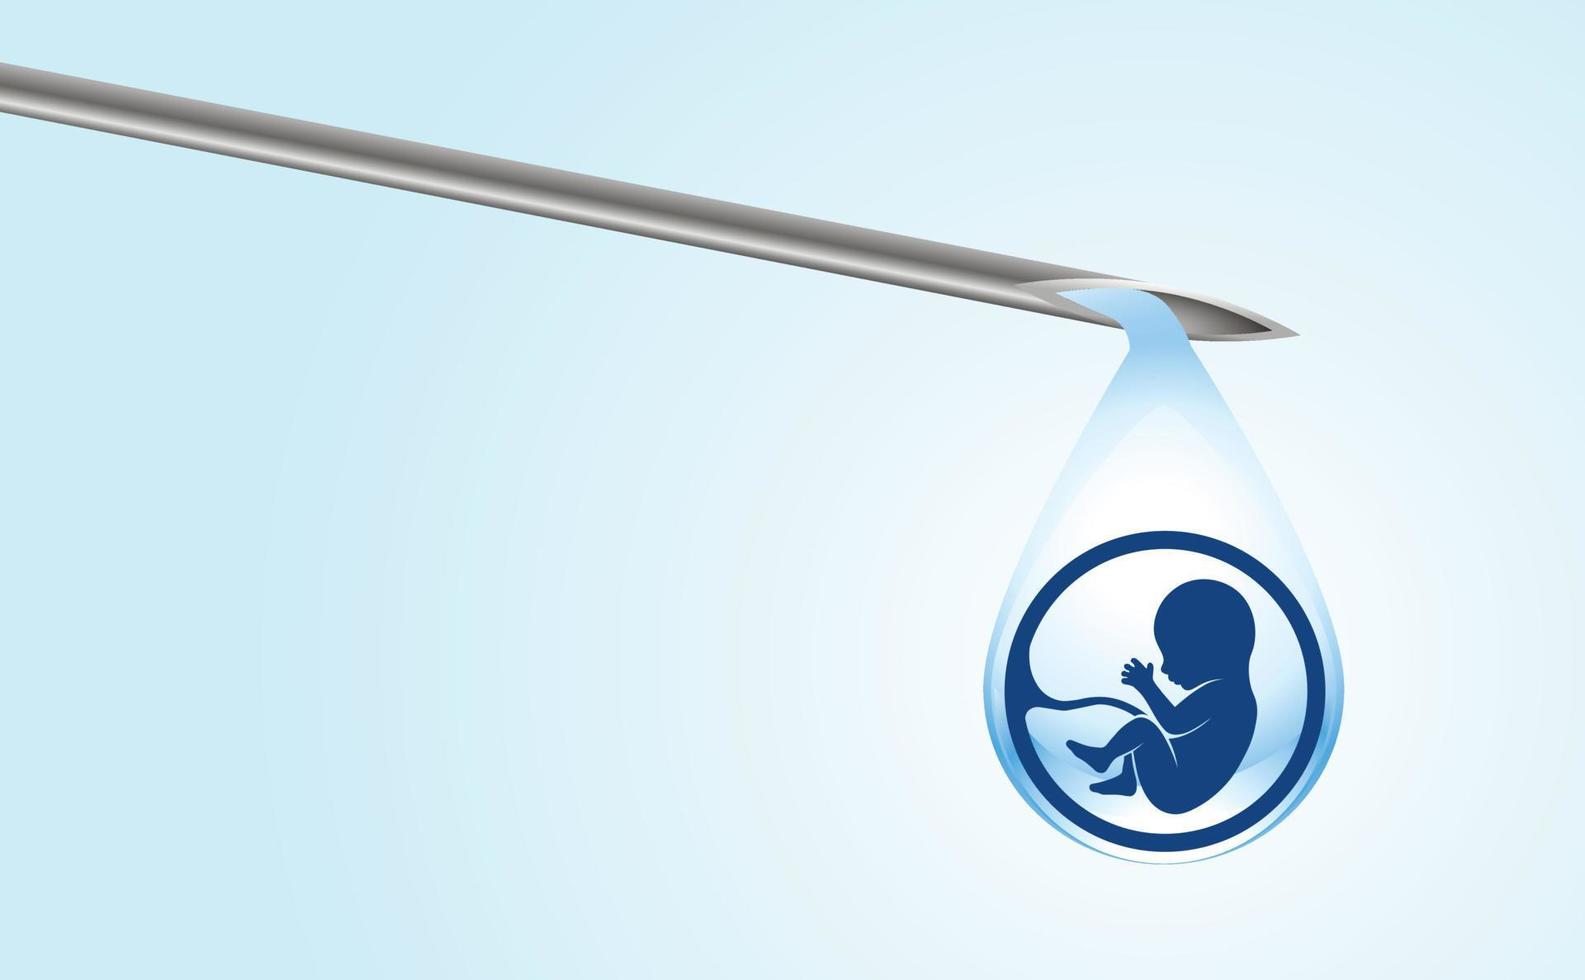 artificiell insemination. provrör för bebisar, ivf. på pipettens spets finns en droppe med siluetten av ett babyembryo som droppar ner i ett provrör. kopieringsutrymme. vektor illustration